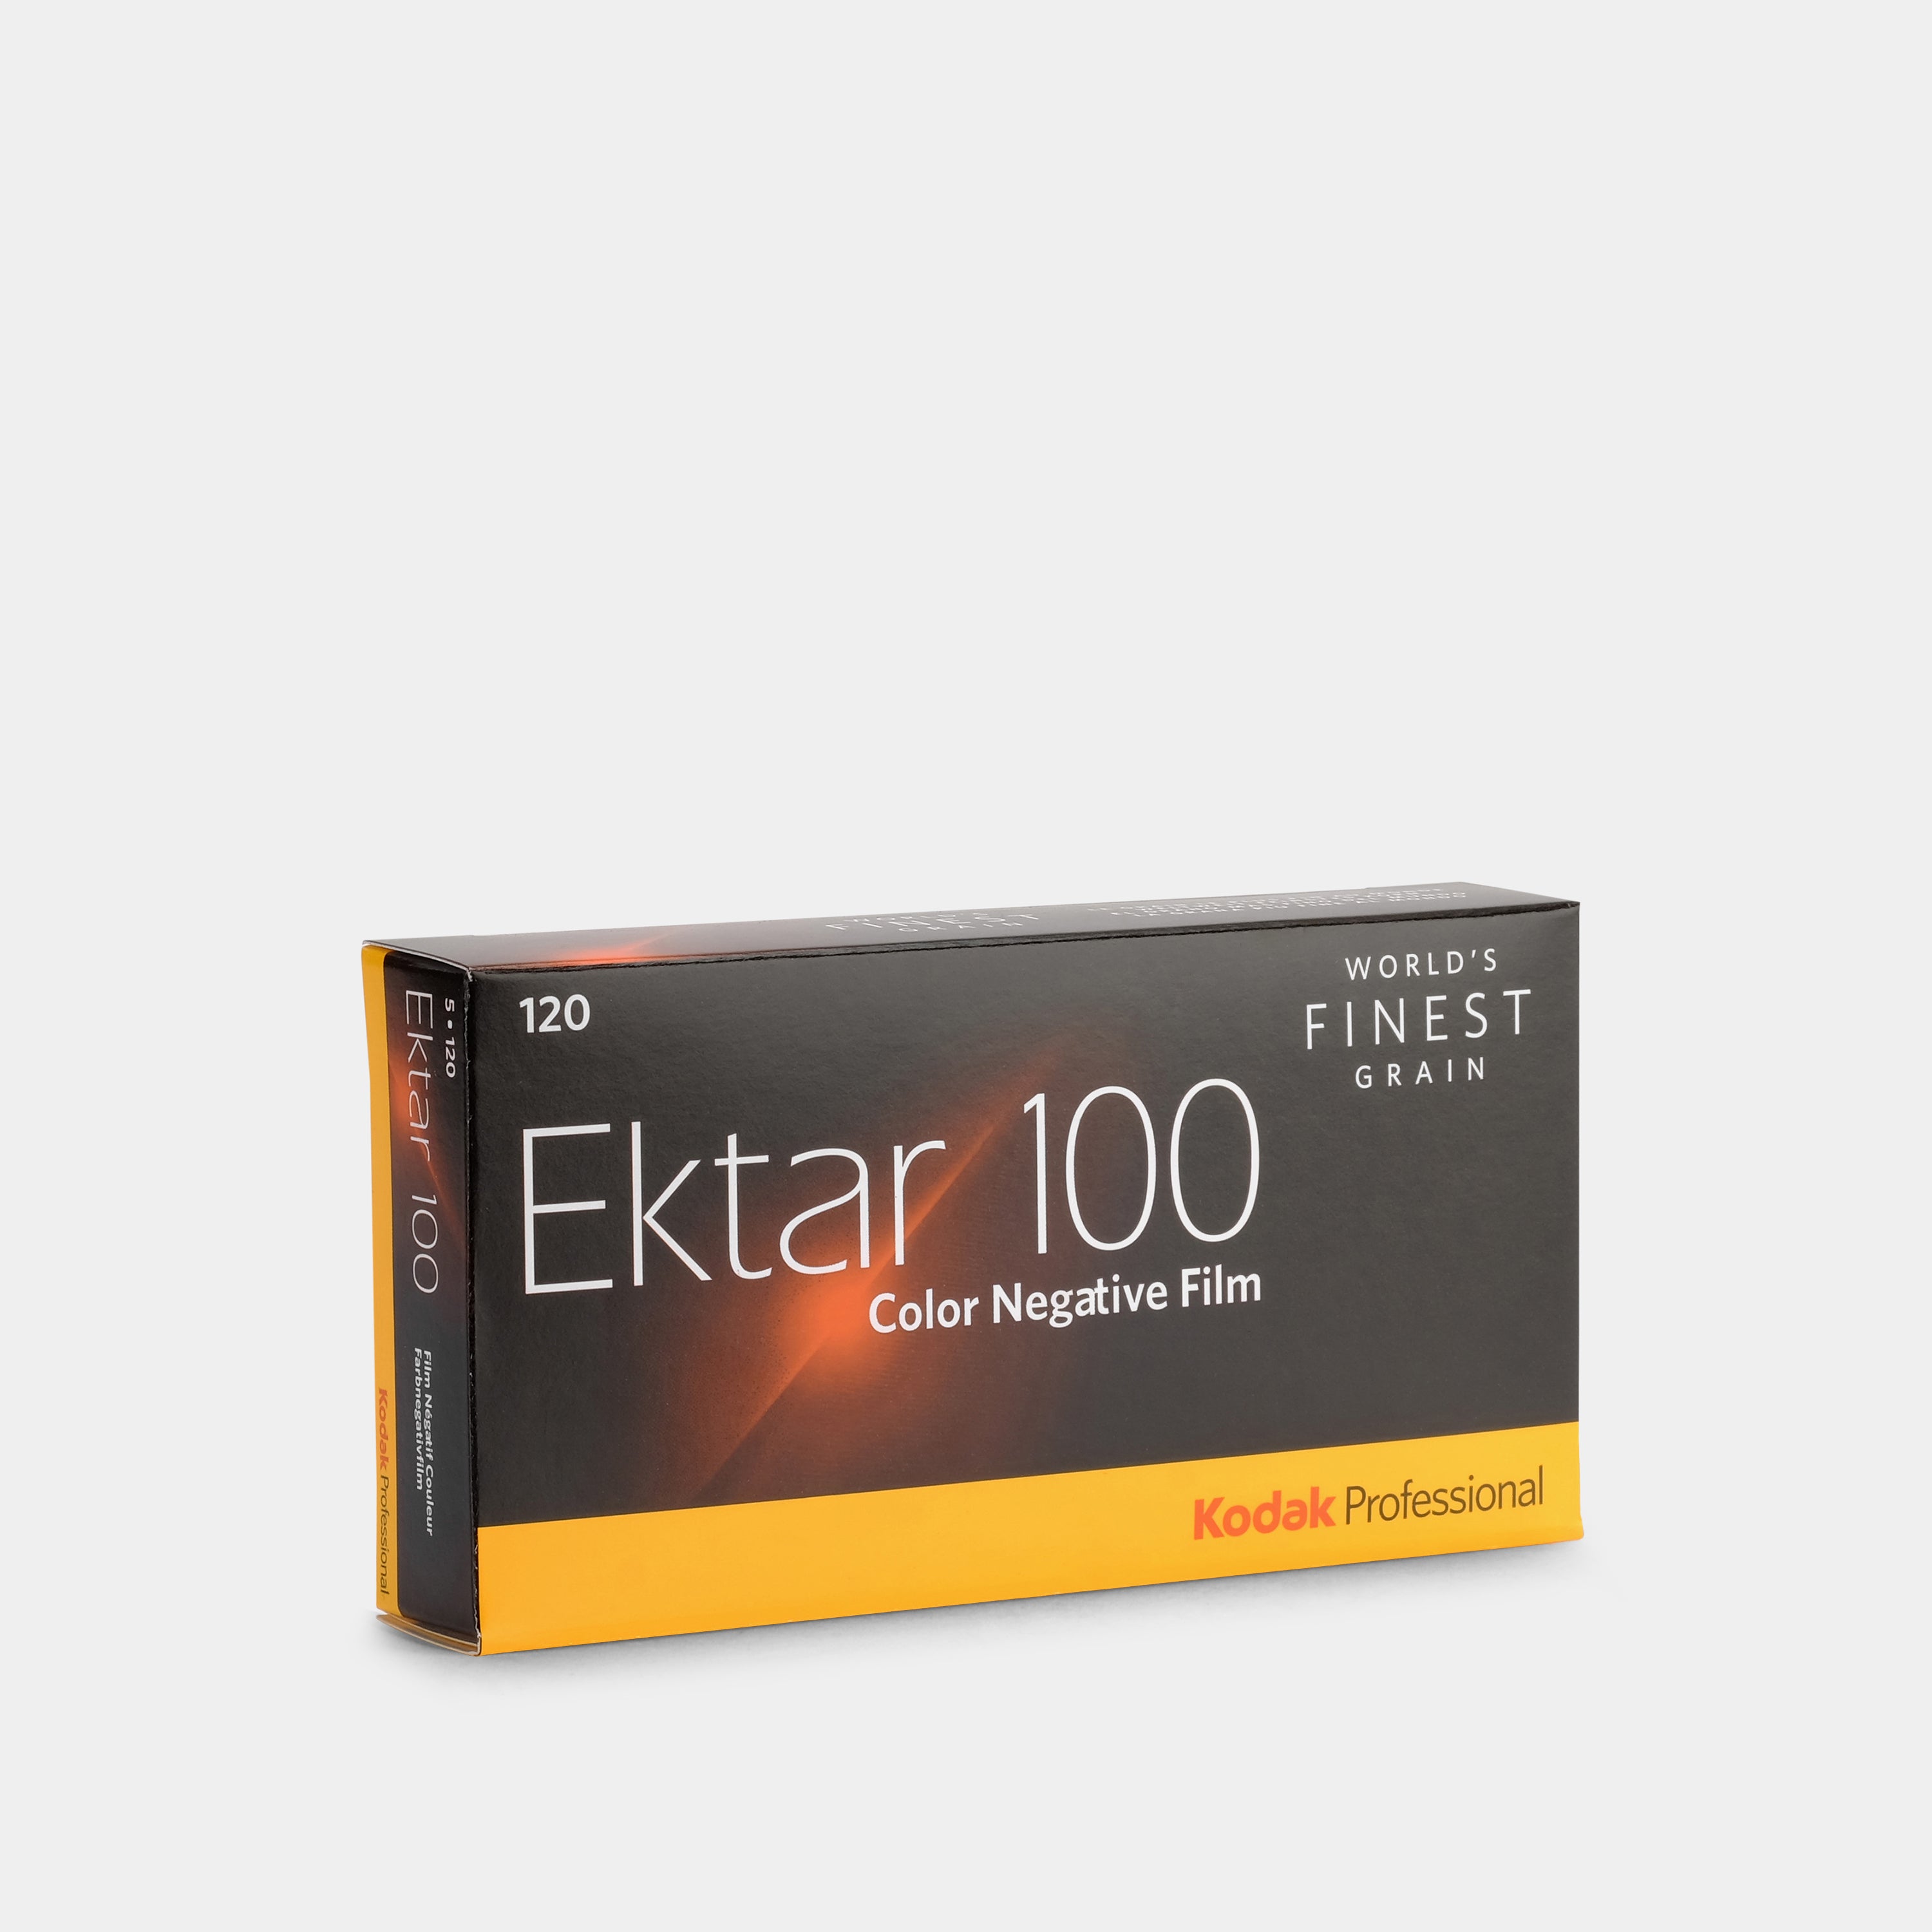 Kodak Professional Ektar 100 Color 120 Film - 5 Pack